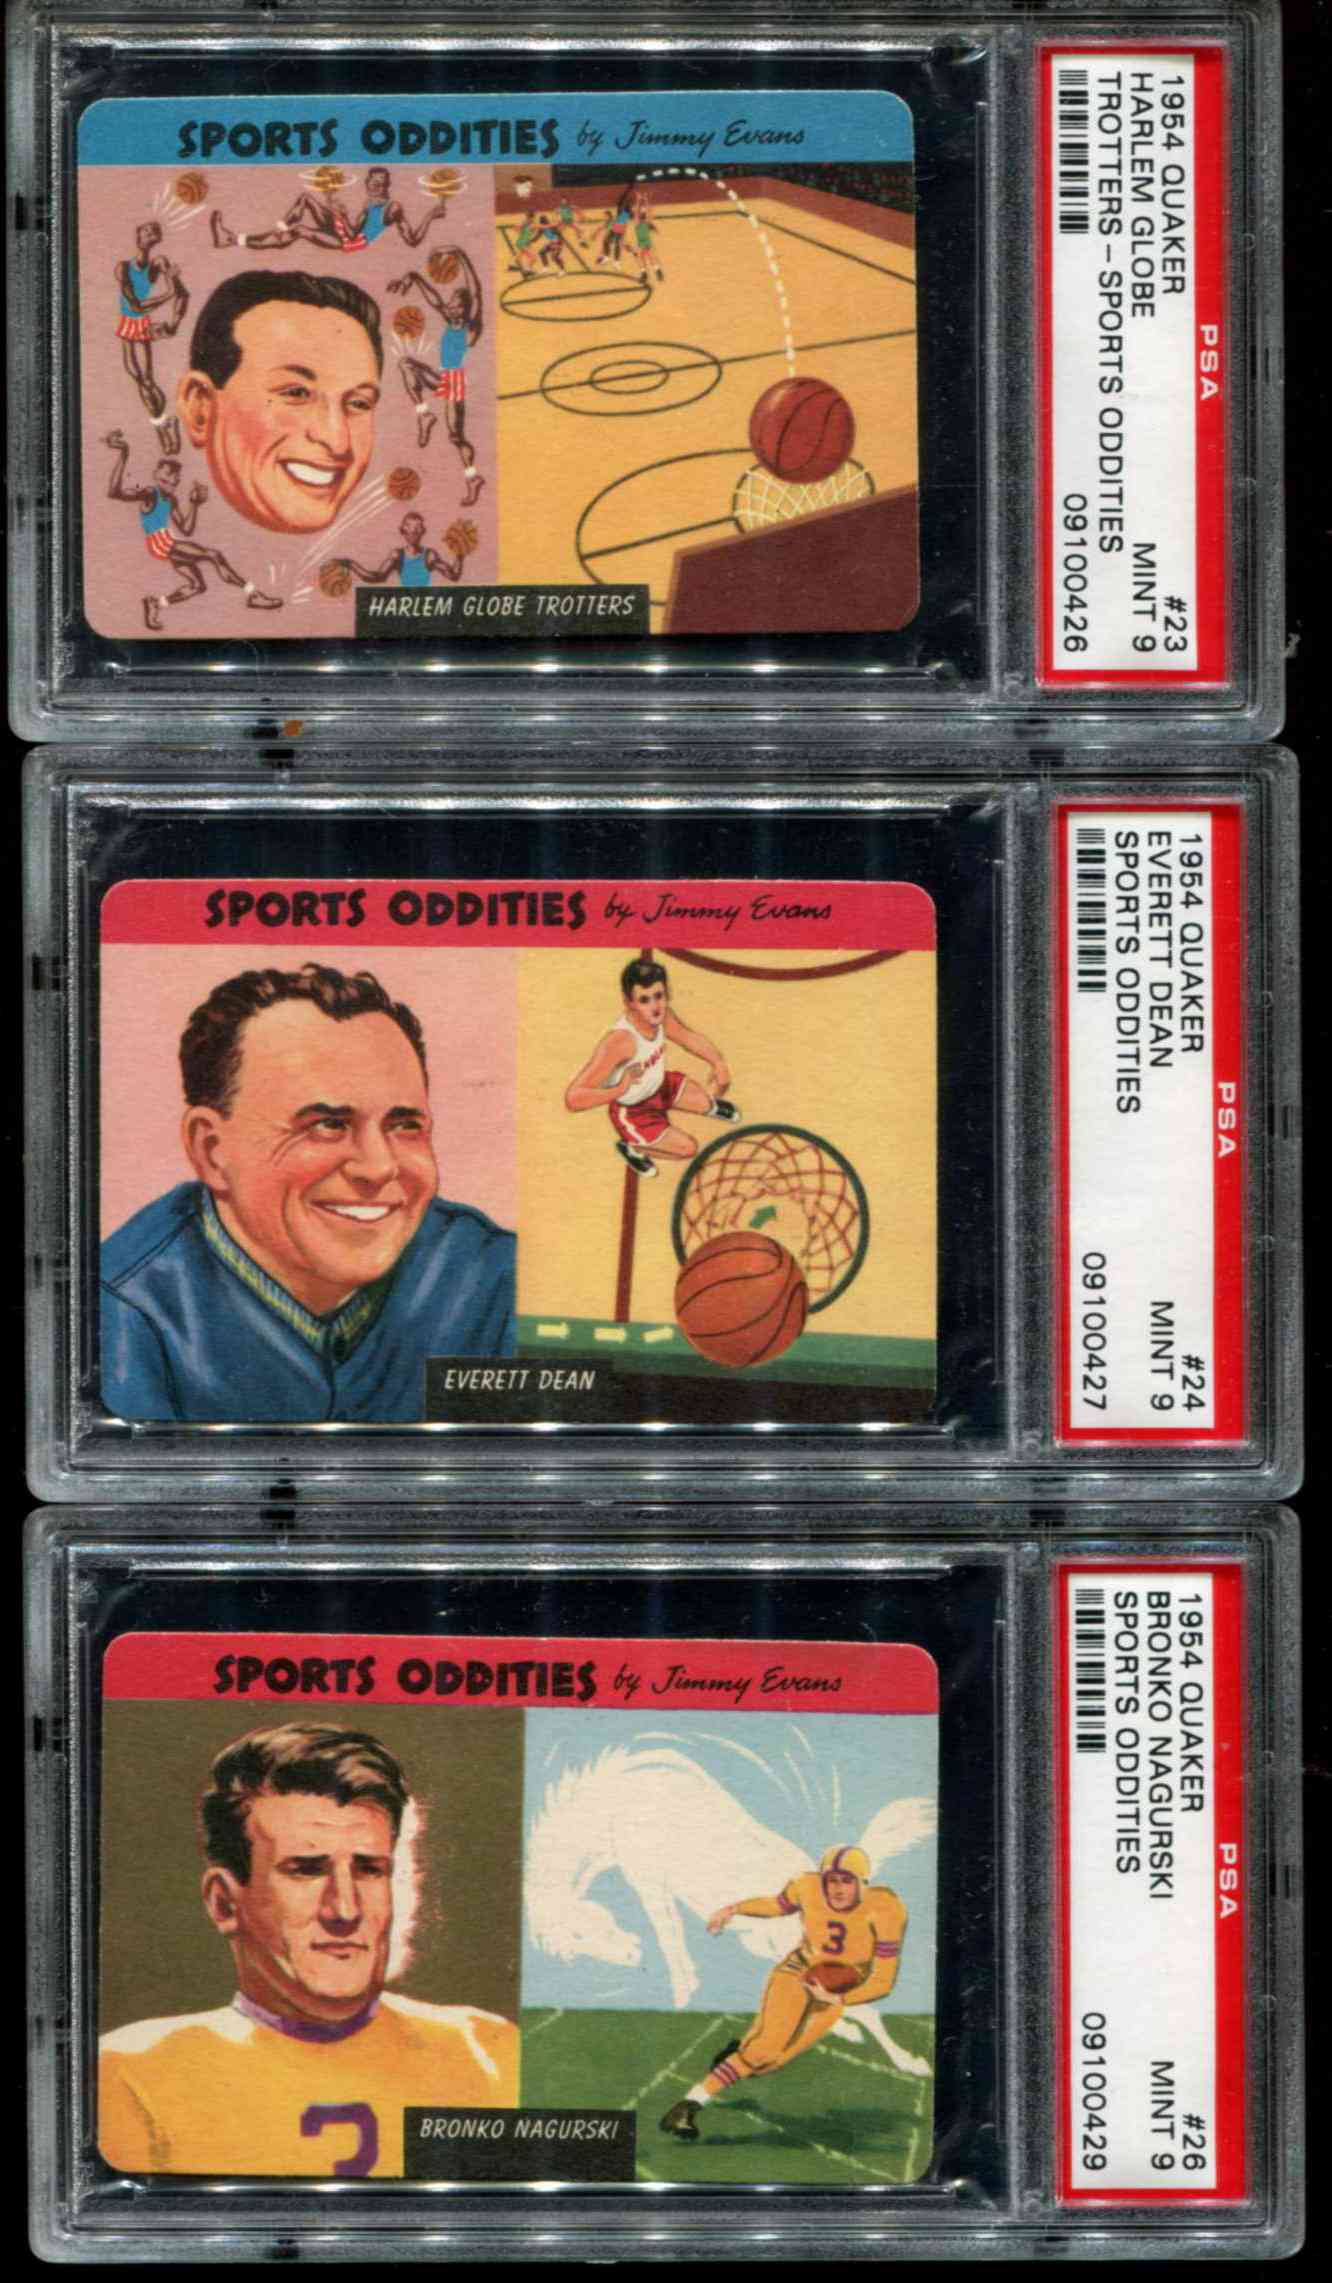 1954 Quaker Oats Sports Oddities #24 Everett Dean (Basketball) Baseball cards value